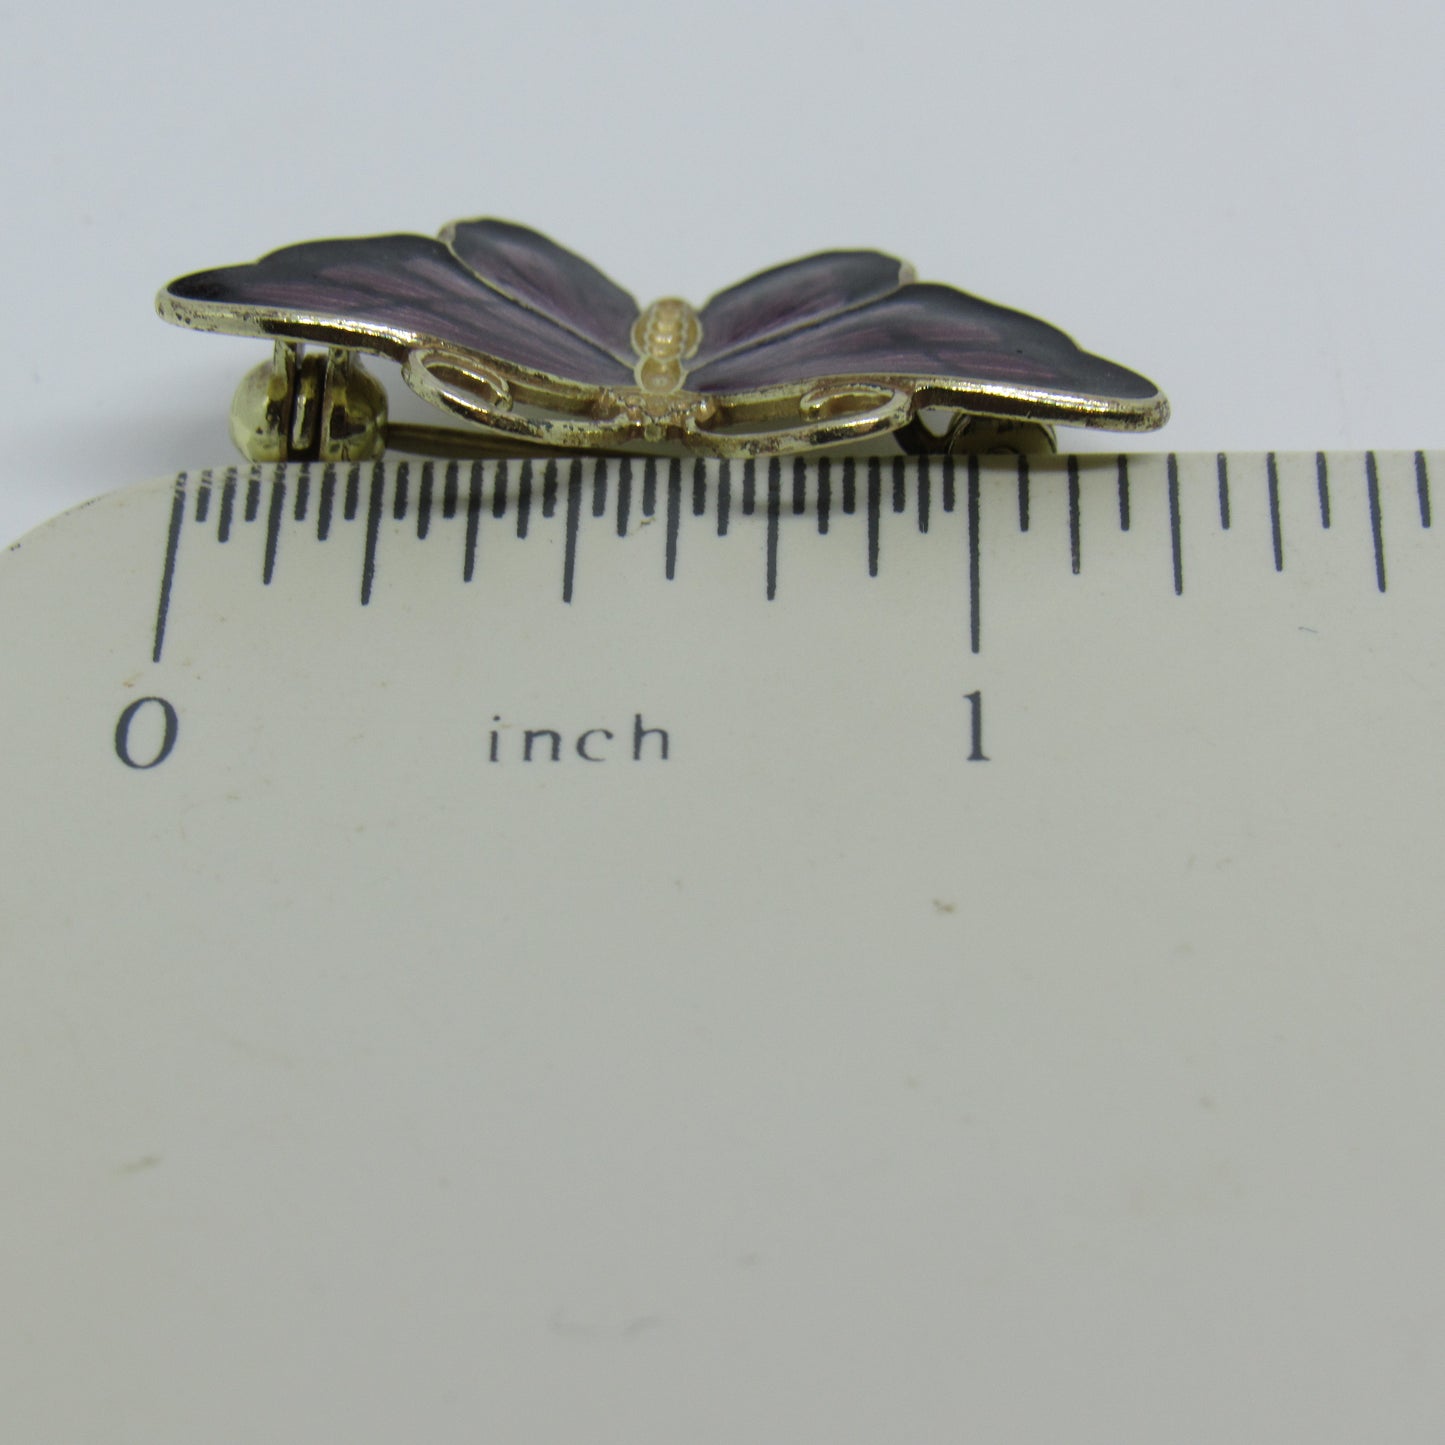 Vintage Hroar Prydz Norway Sterling Silver Purple Enamel Butterfly Brooch